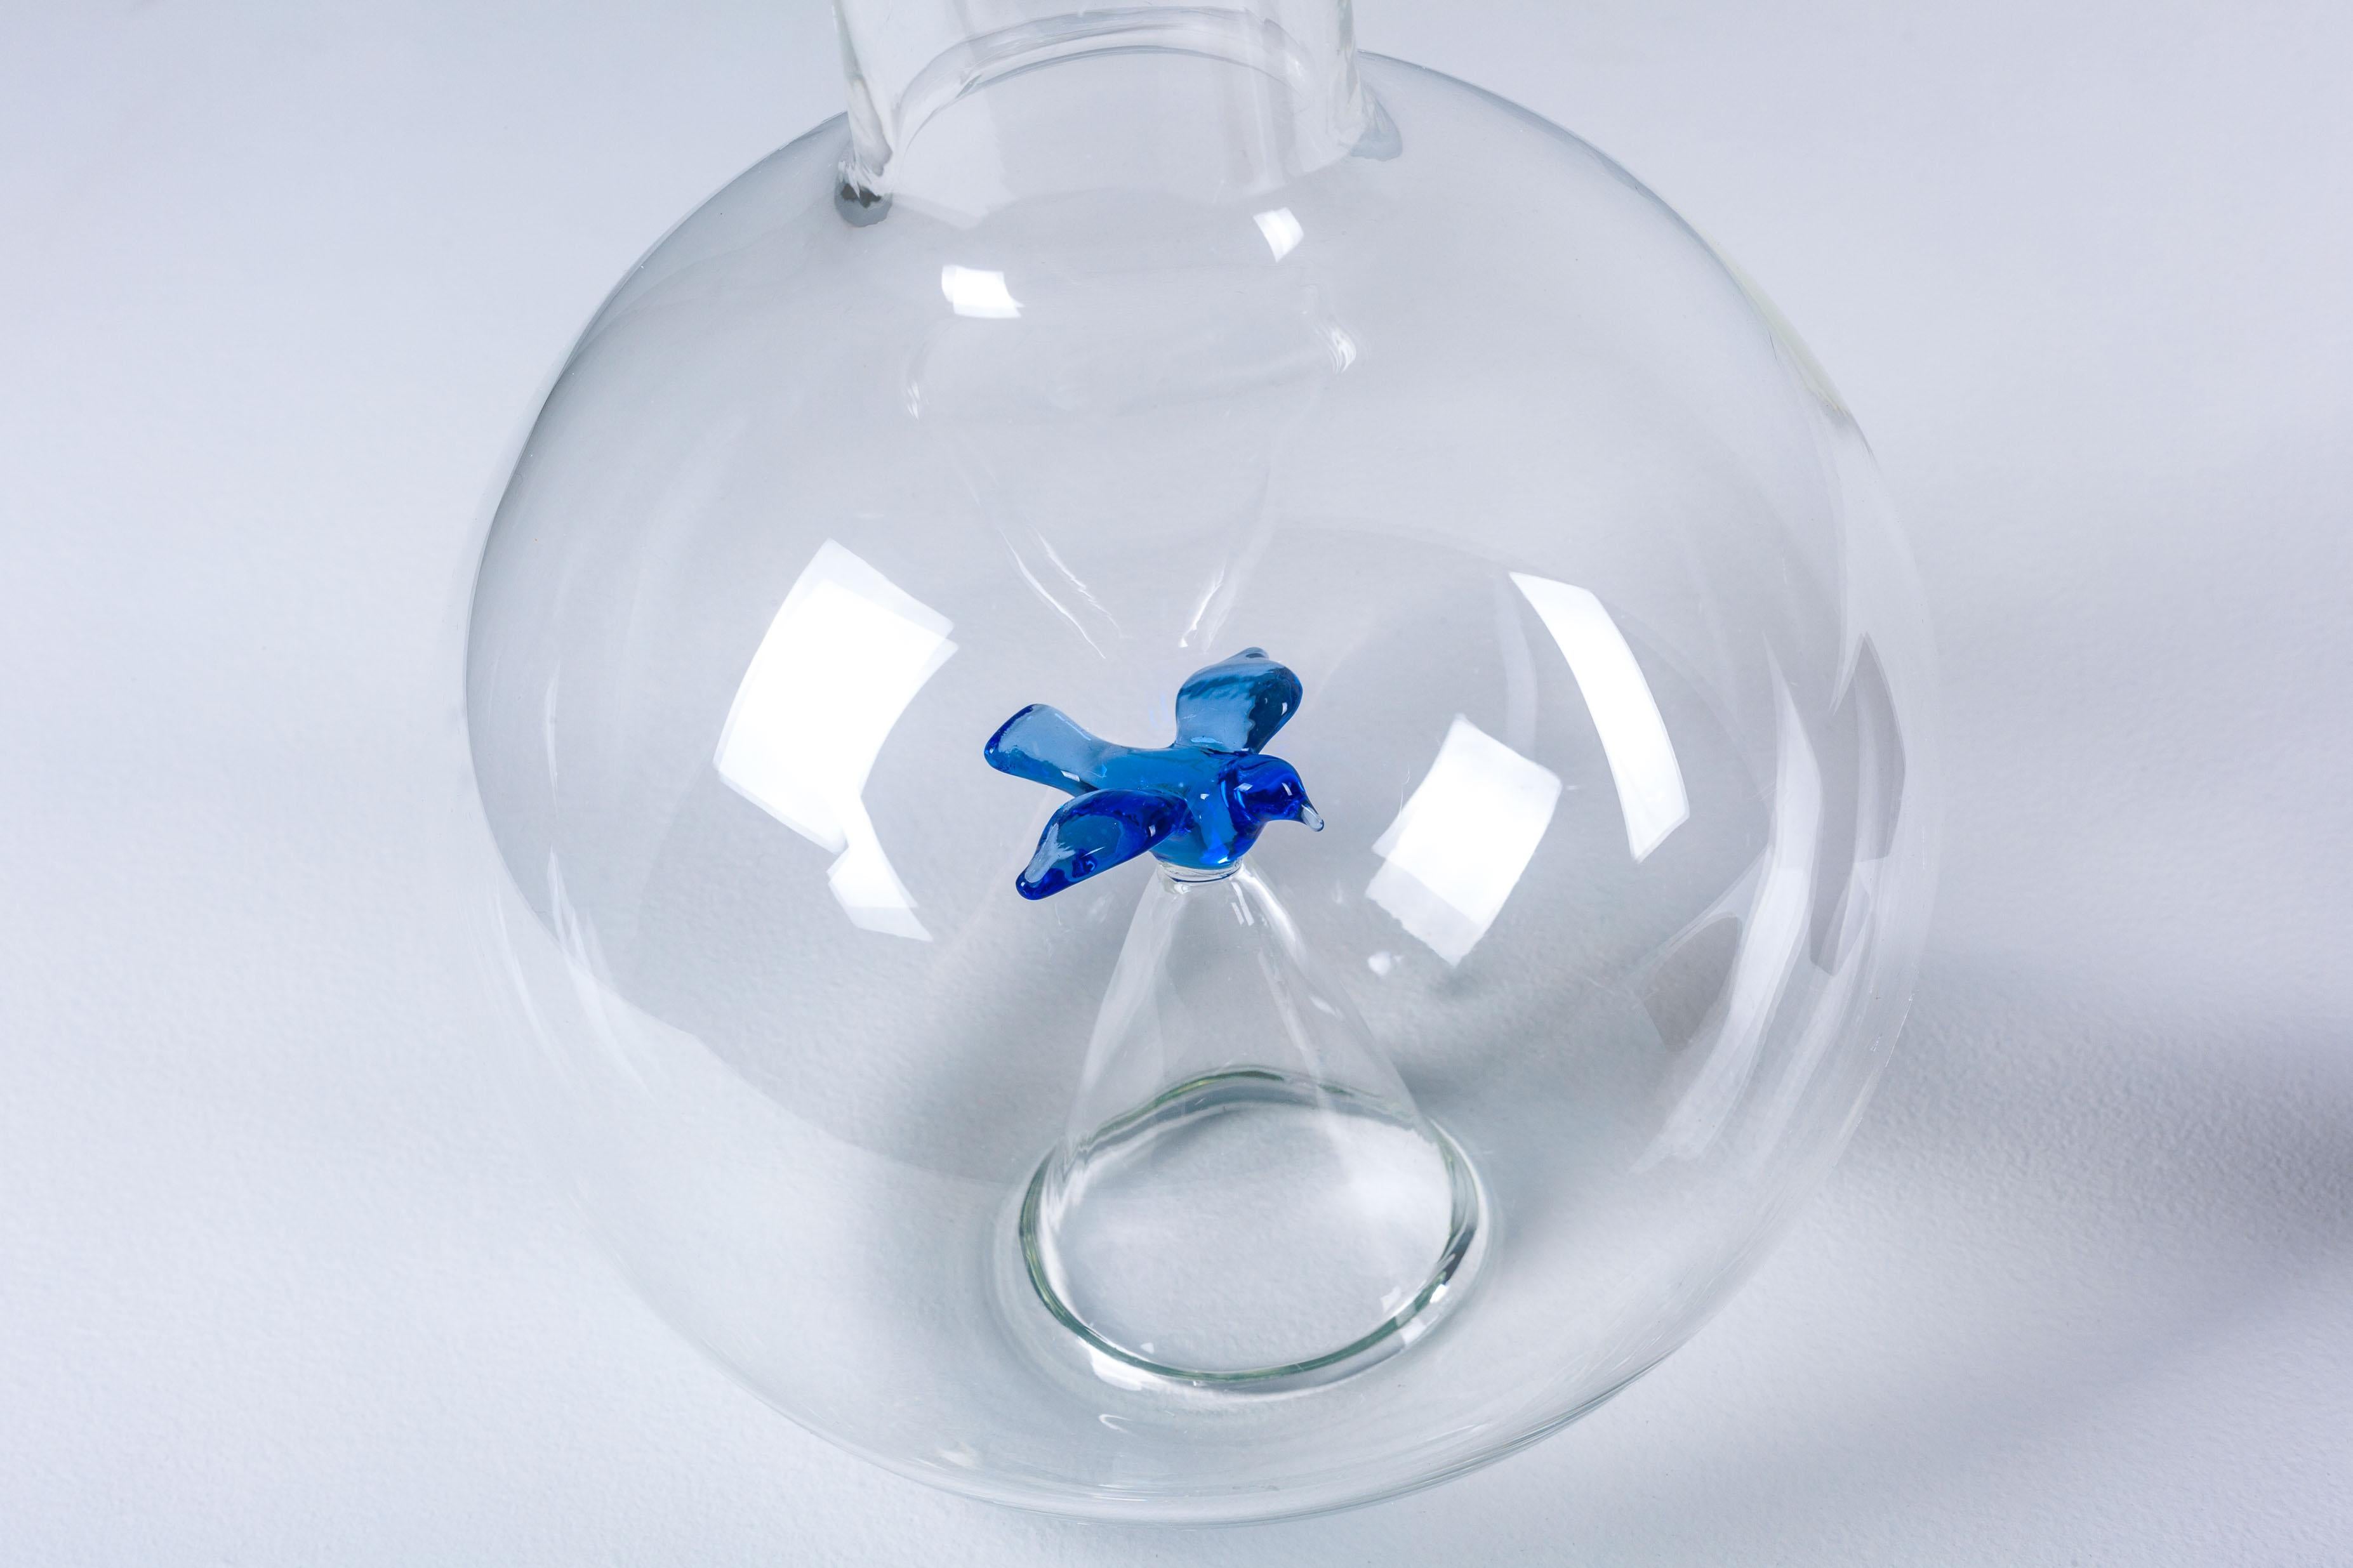 Weindekanter aus mundgeblasenem Glas von Michael Graves für JcPenney im Jahr 2013 USA. Es handelt sich um ein neues, unbenutztes Stück, das mit seiner Originalverpackung geliefert wird. Dekanter: 12 x 6 Zoll. Ein bemerkenswert zartes und cleveres